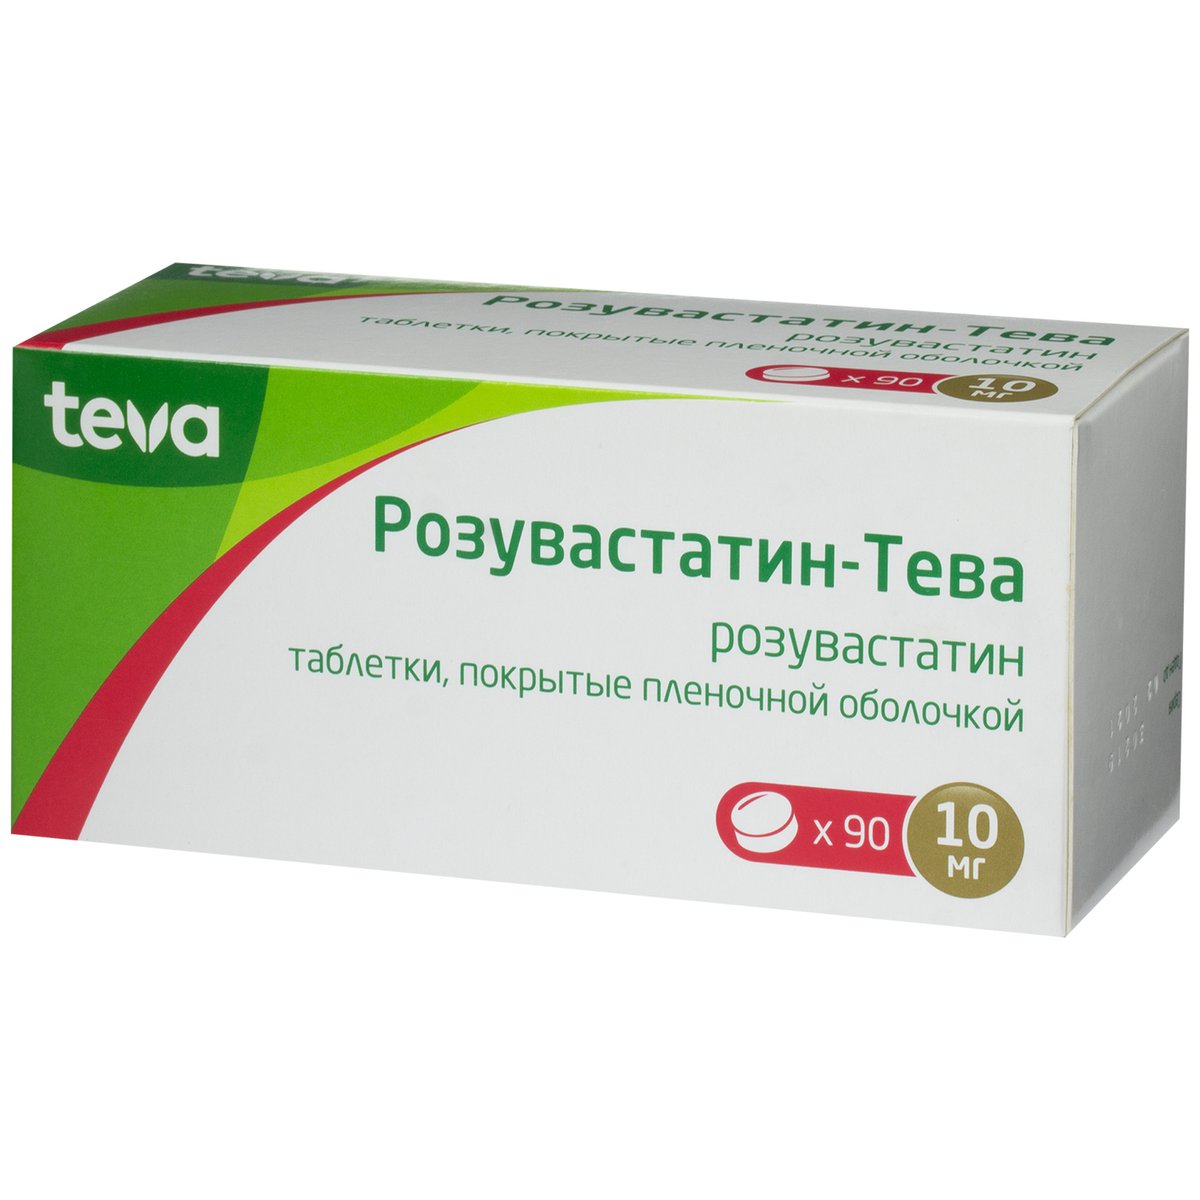 Розувастатин-Тева (таблетки, 90 шт, 10 мг) - цена,  онлайн в .